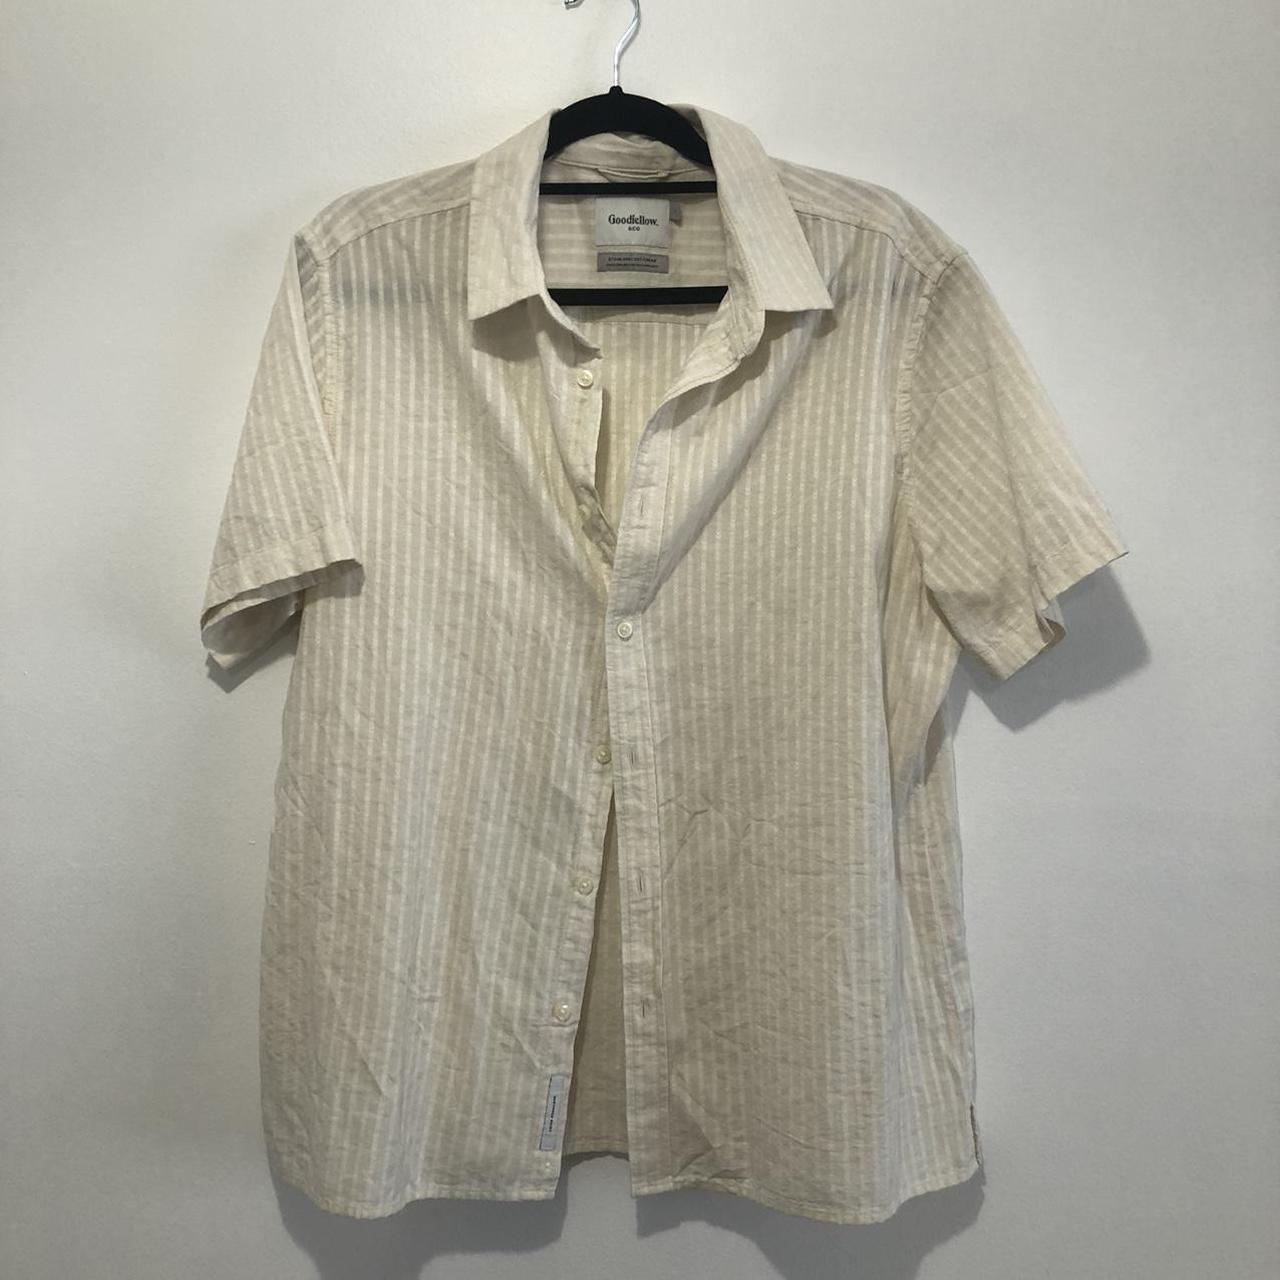 Men’s Goodfellow white casual button down shirt - Depop